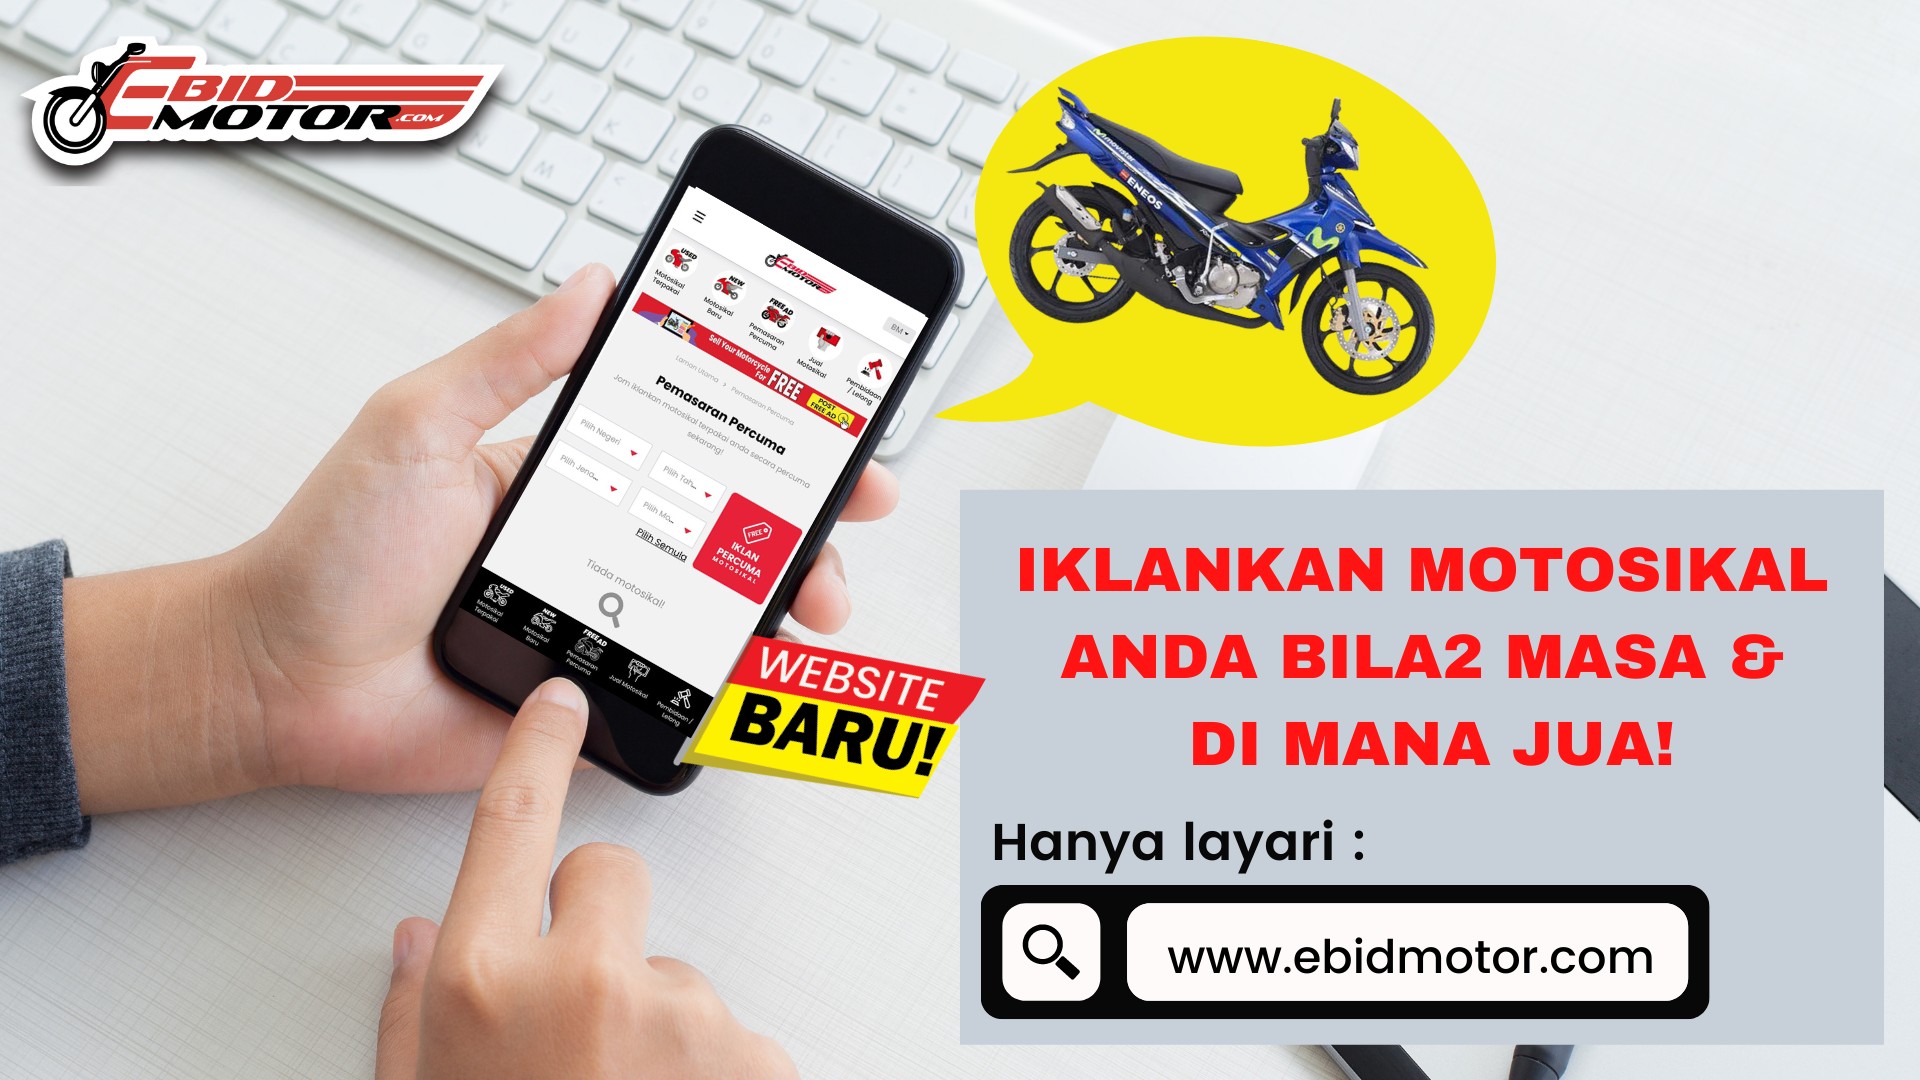 TAK SAMPAI 10 MINIT DAH BOLEH IKLANKAN MOTOR DI WEBSITE EBIDMOTOR.COM!